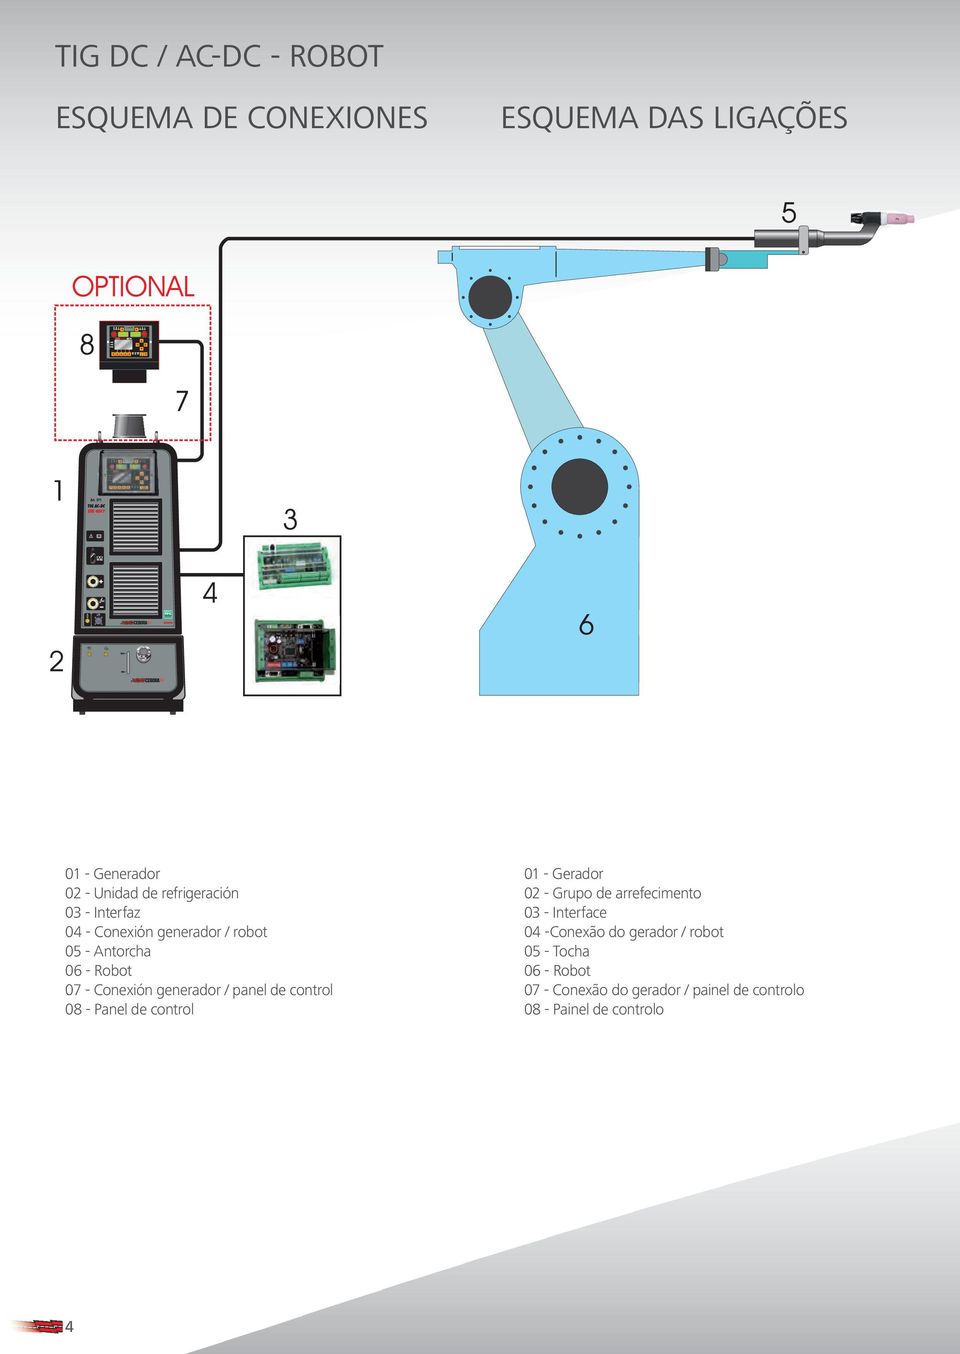 08 - Panel de control 01 - Gerador 02 - Grupo de arrefecimento 03 - Interface 04 -Conexão do gerador